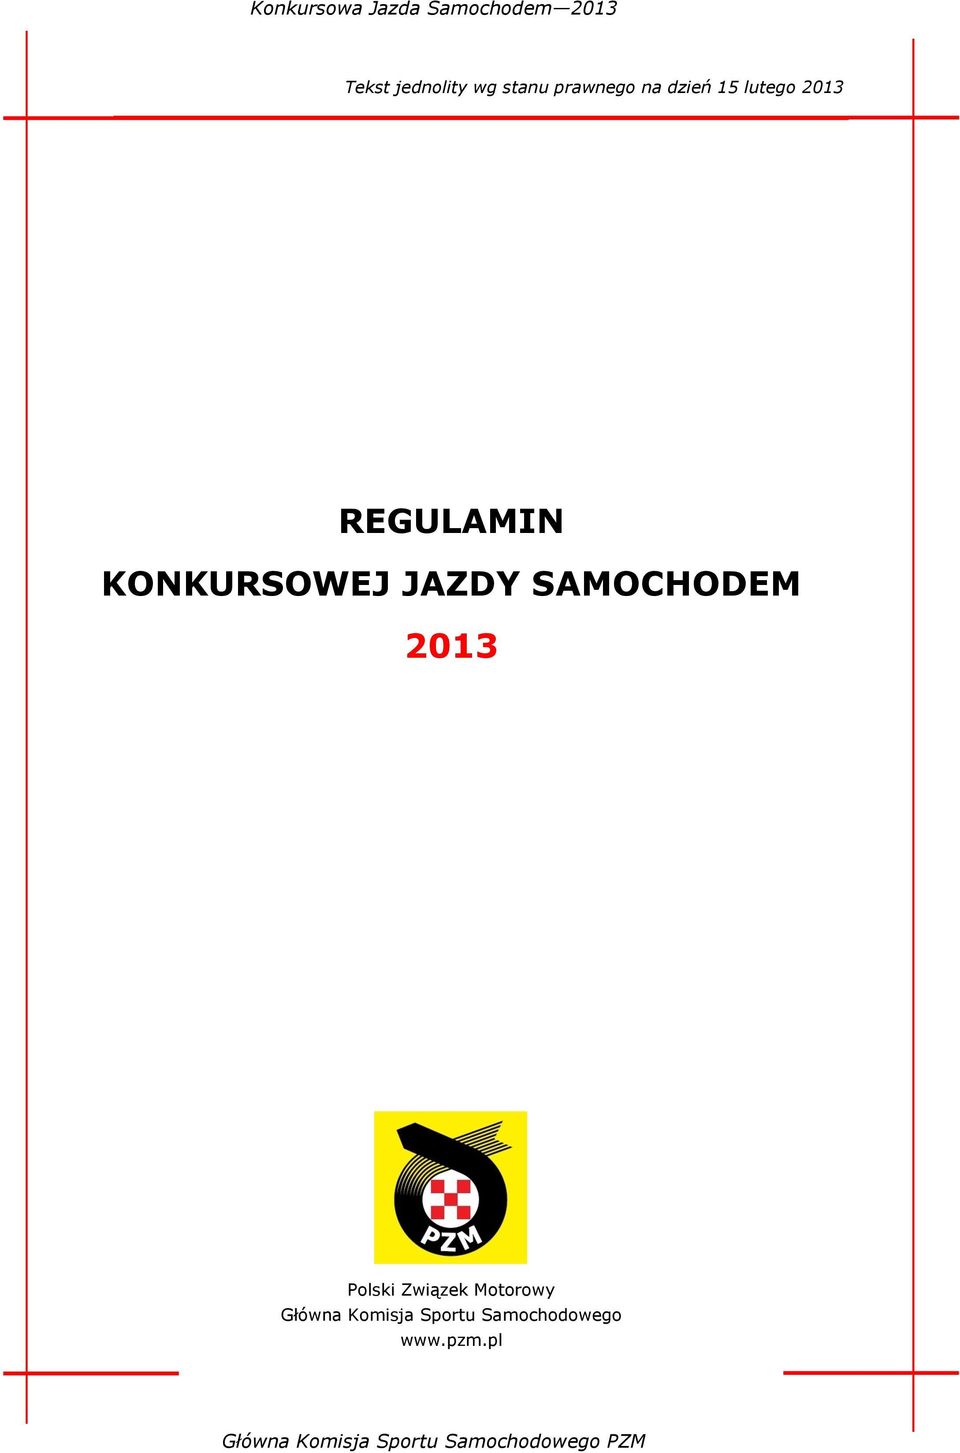 SAMOCHODEM 2013 Polski Związek Motorowy